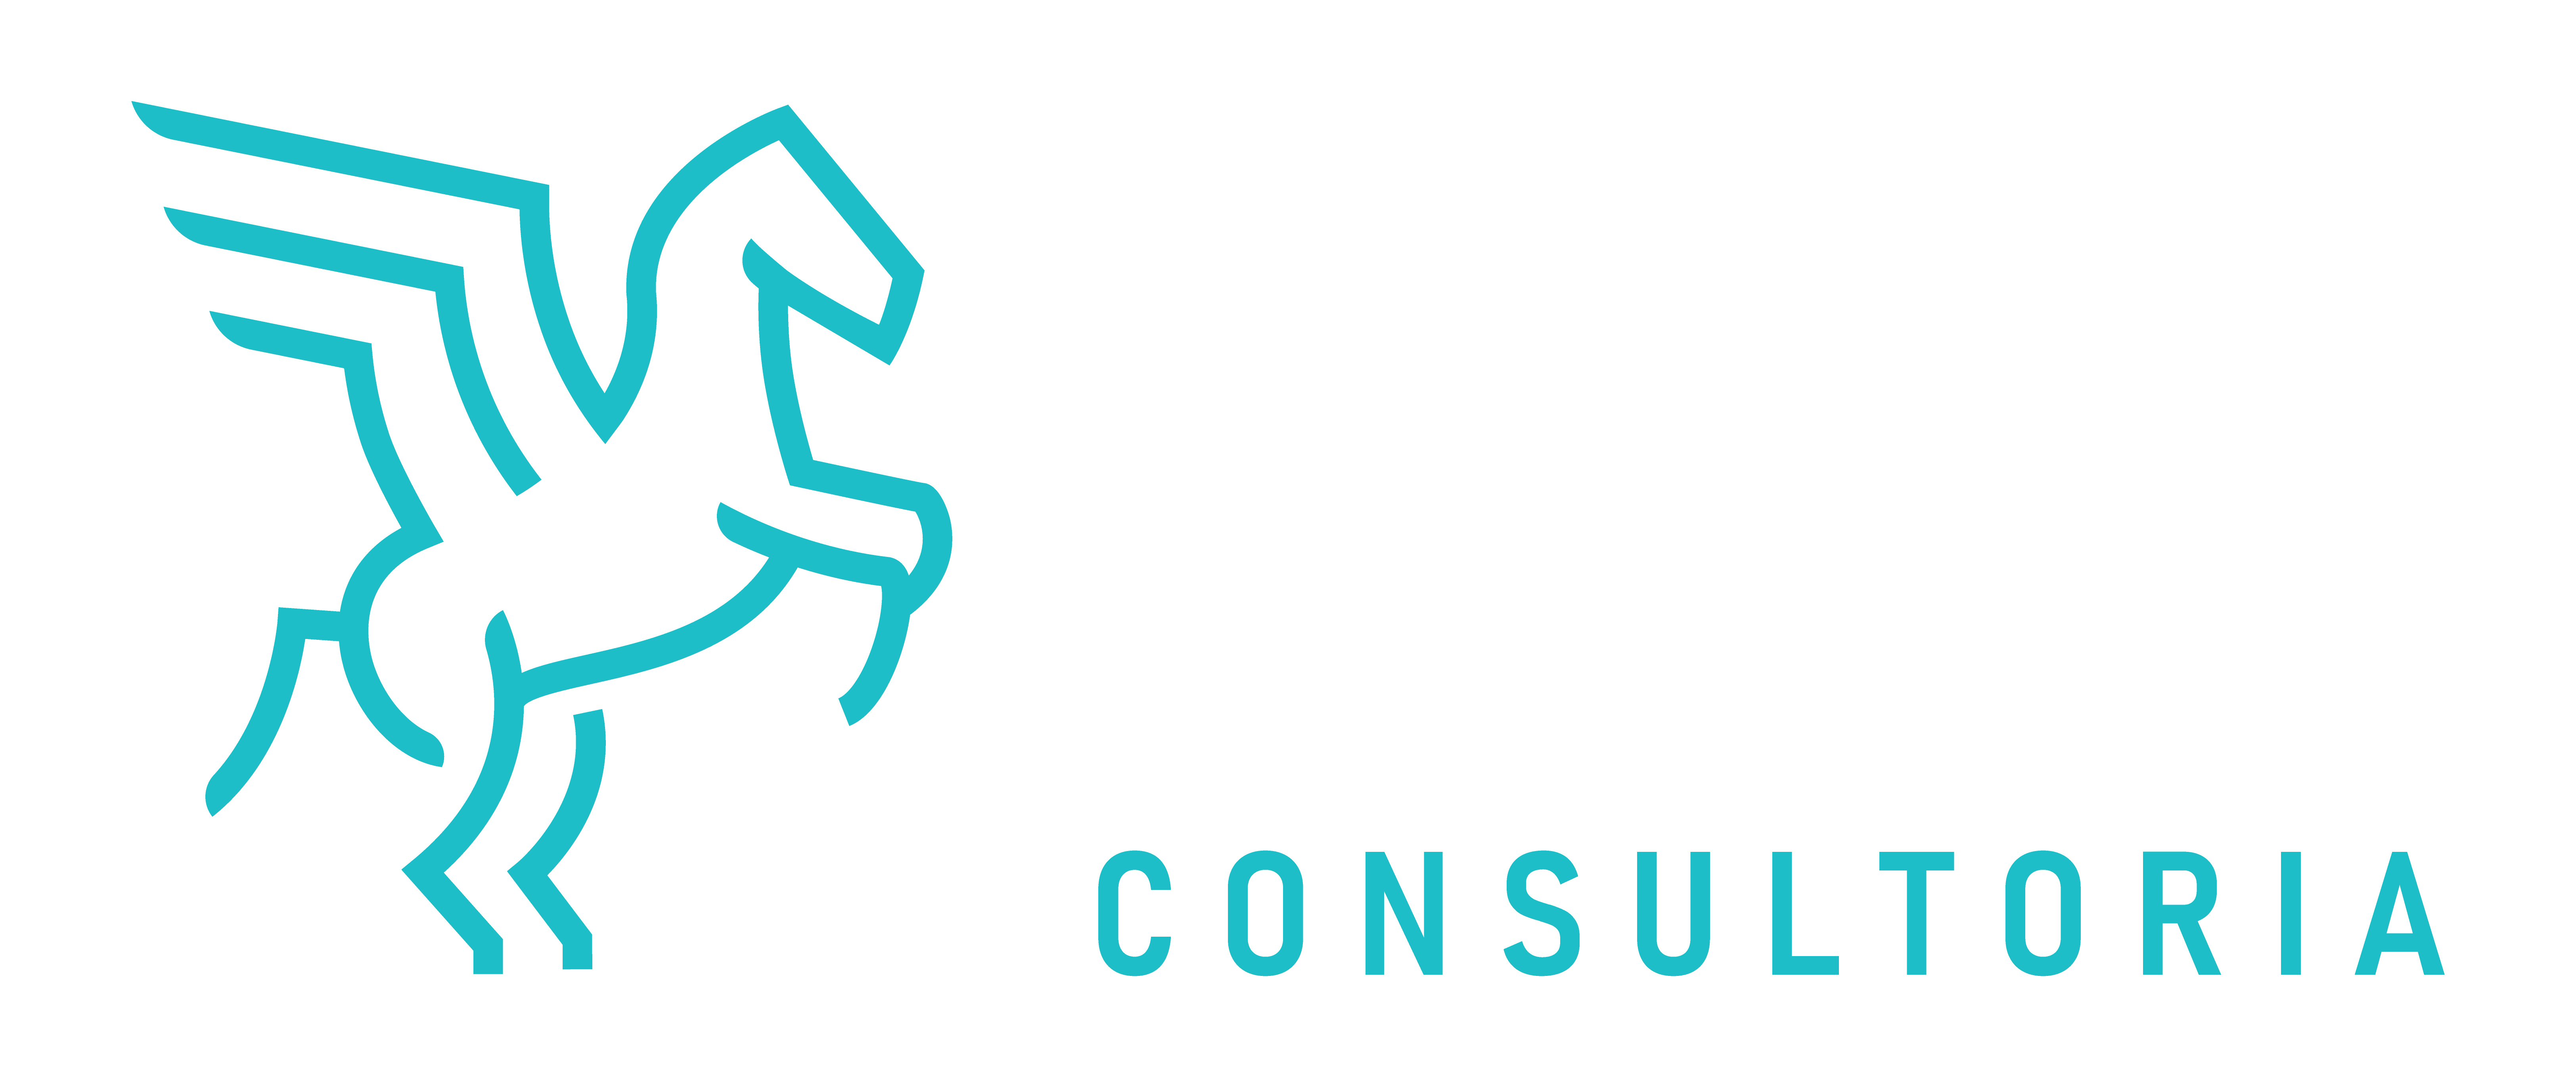 ECR Consulting